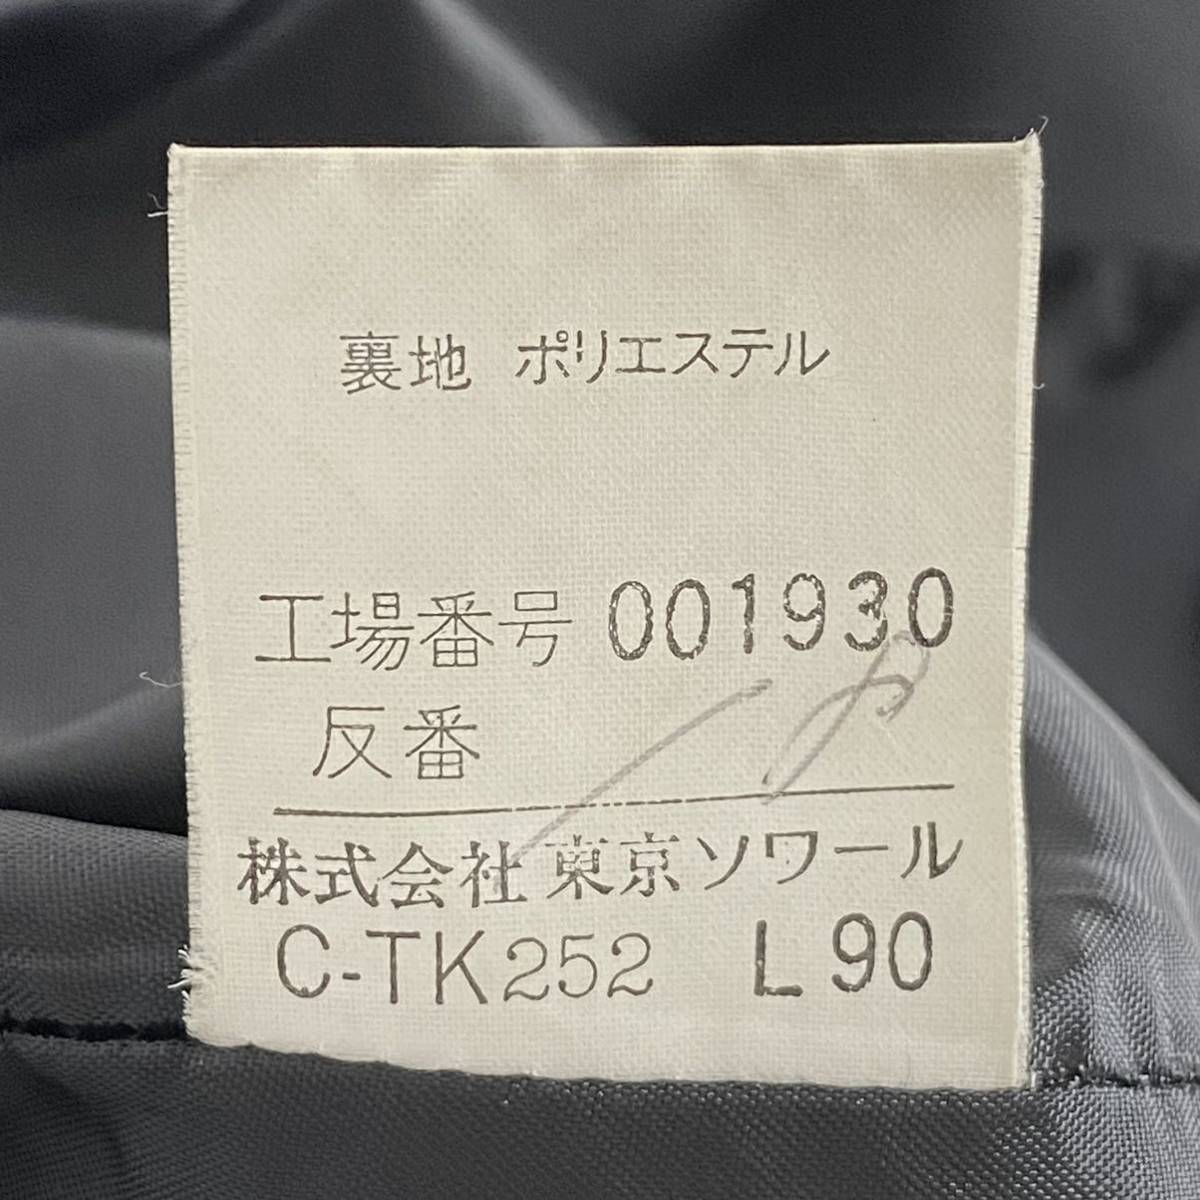 Cf6-2 Tokyo sowa-ruFORMAL черный формальный формальный One-piece короткий рукав One-piece длинный One-piece M соответствует женский женский траурный костюм 